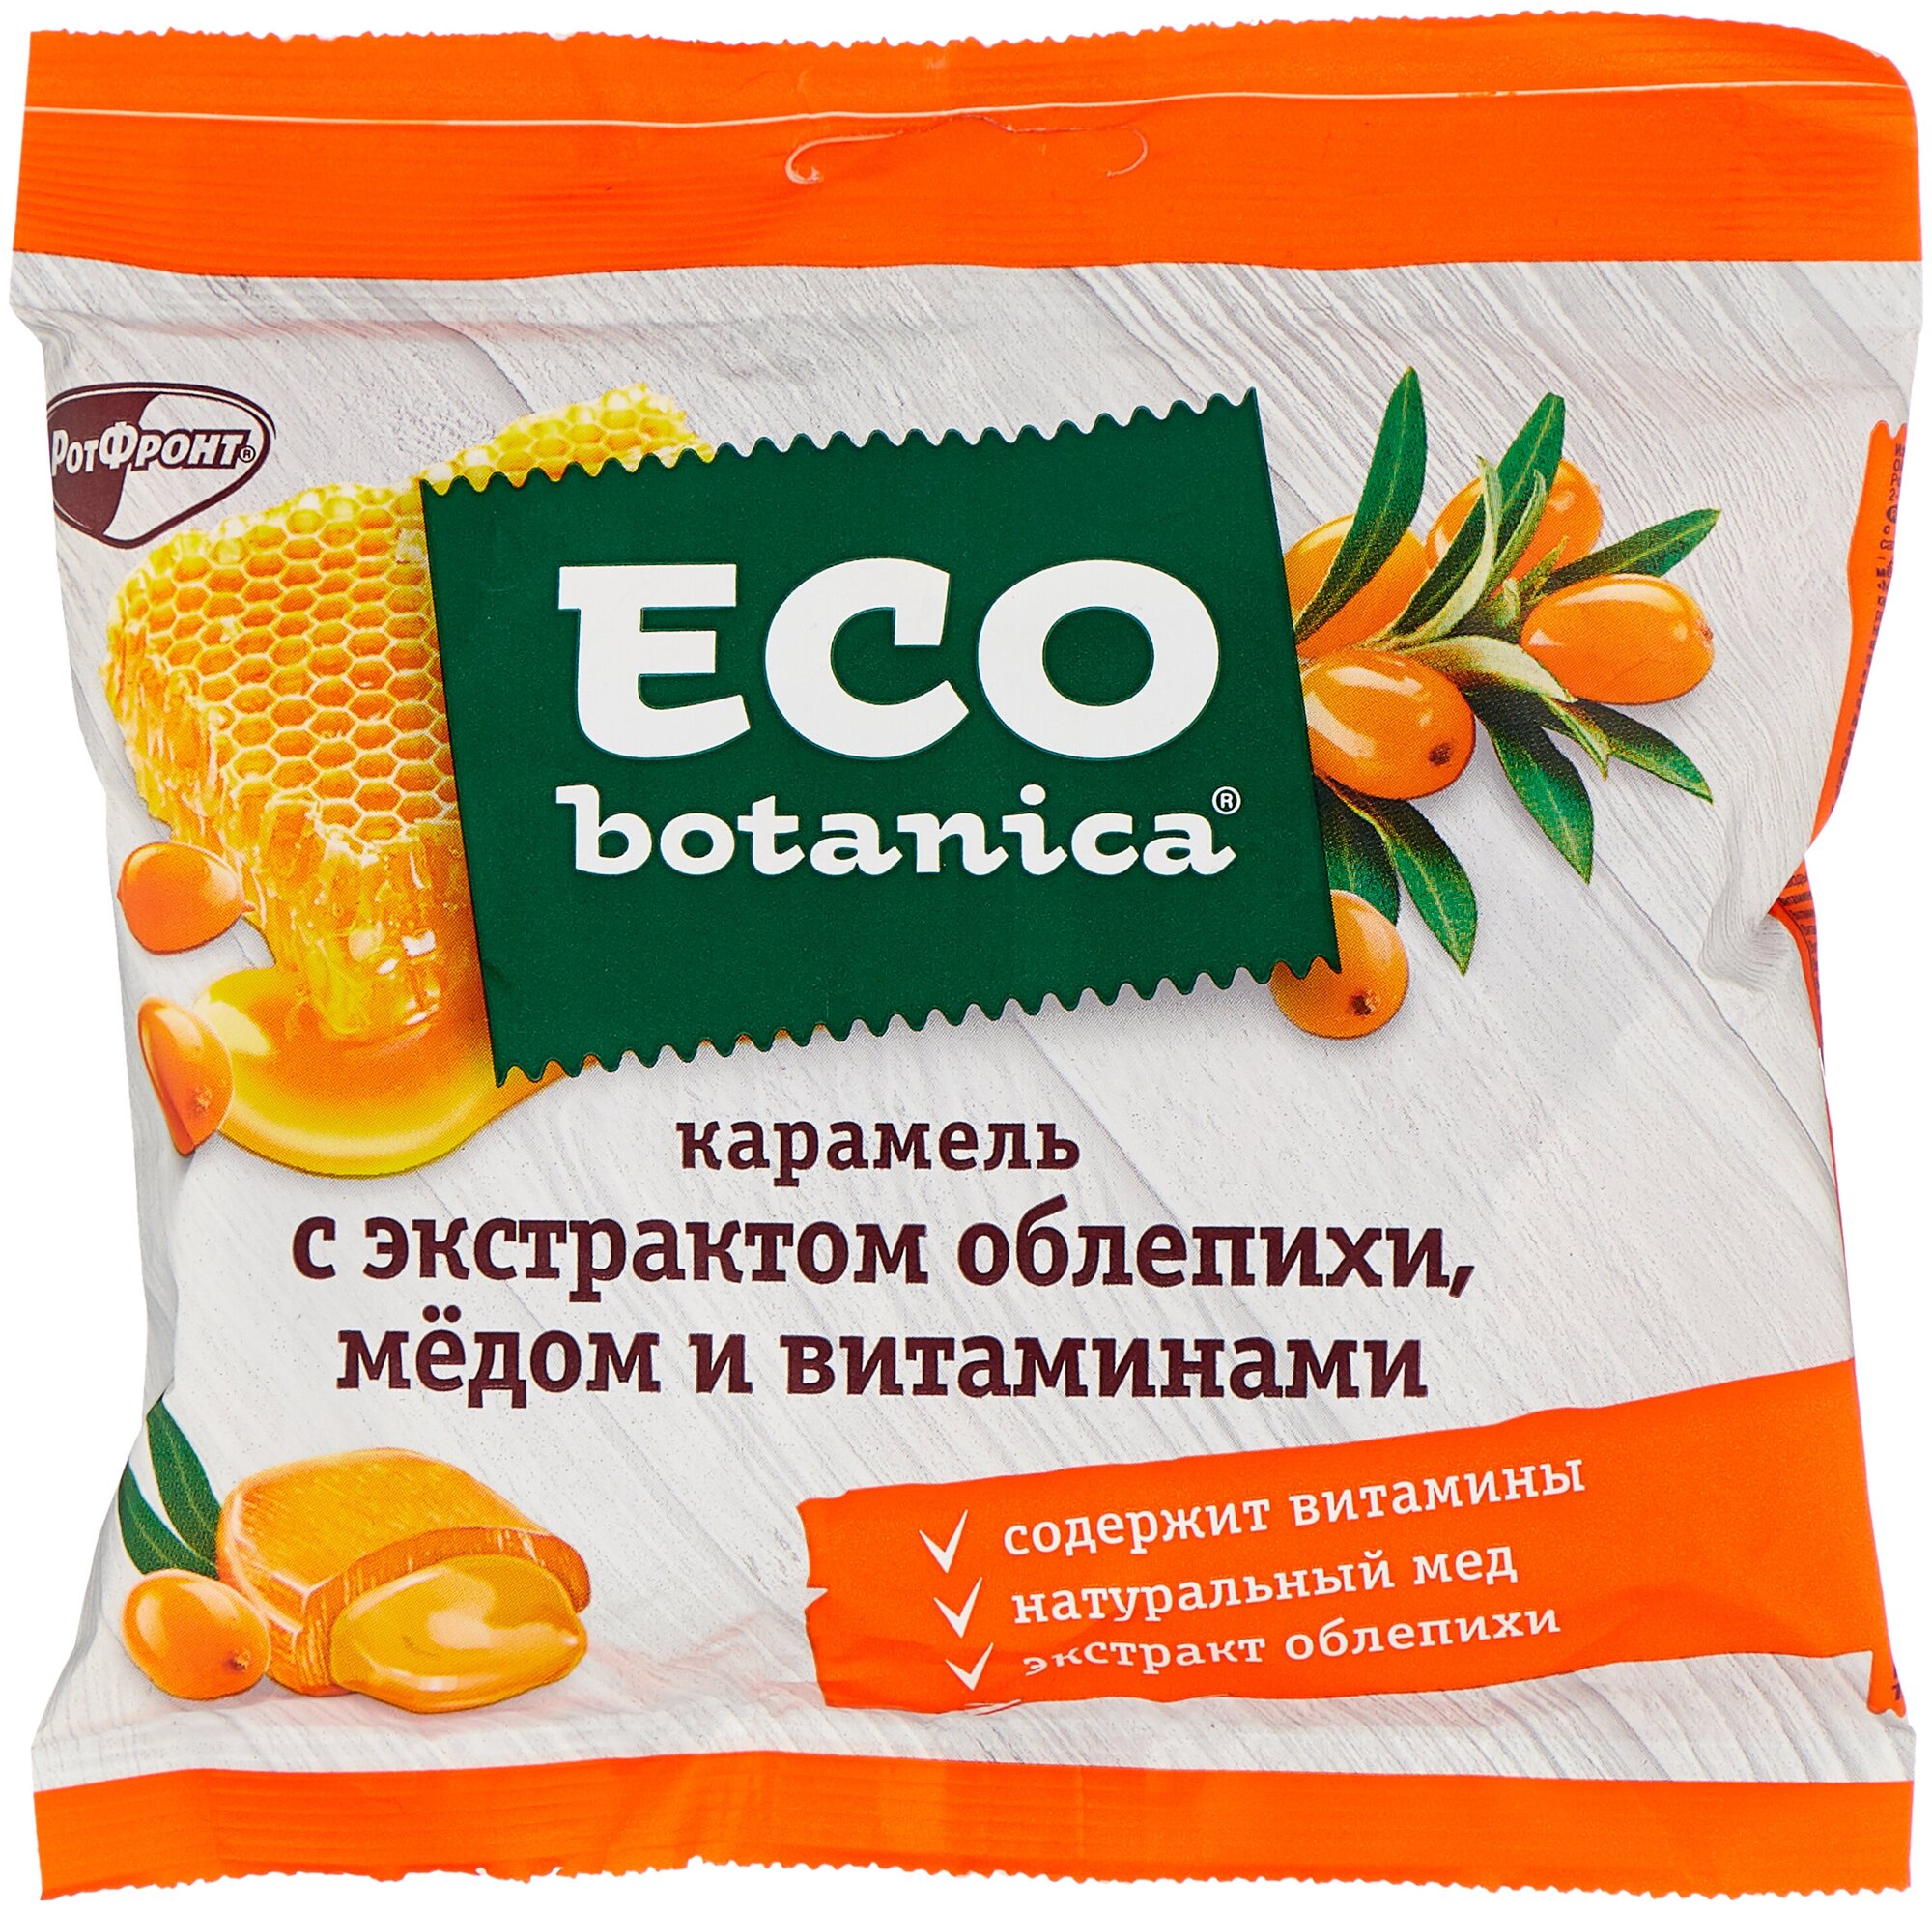 Карамель Eco Botanica с экстрактом облепихи медом и витаминами